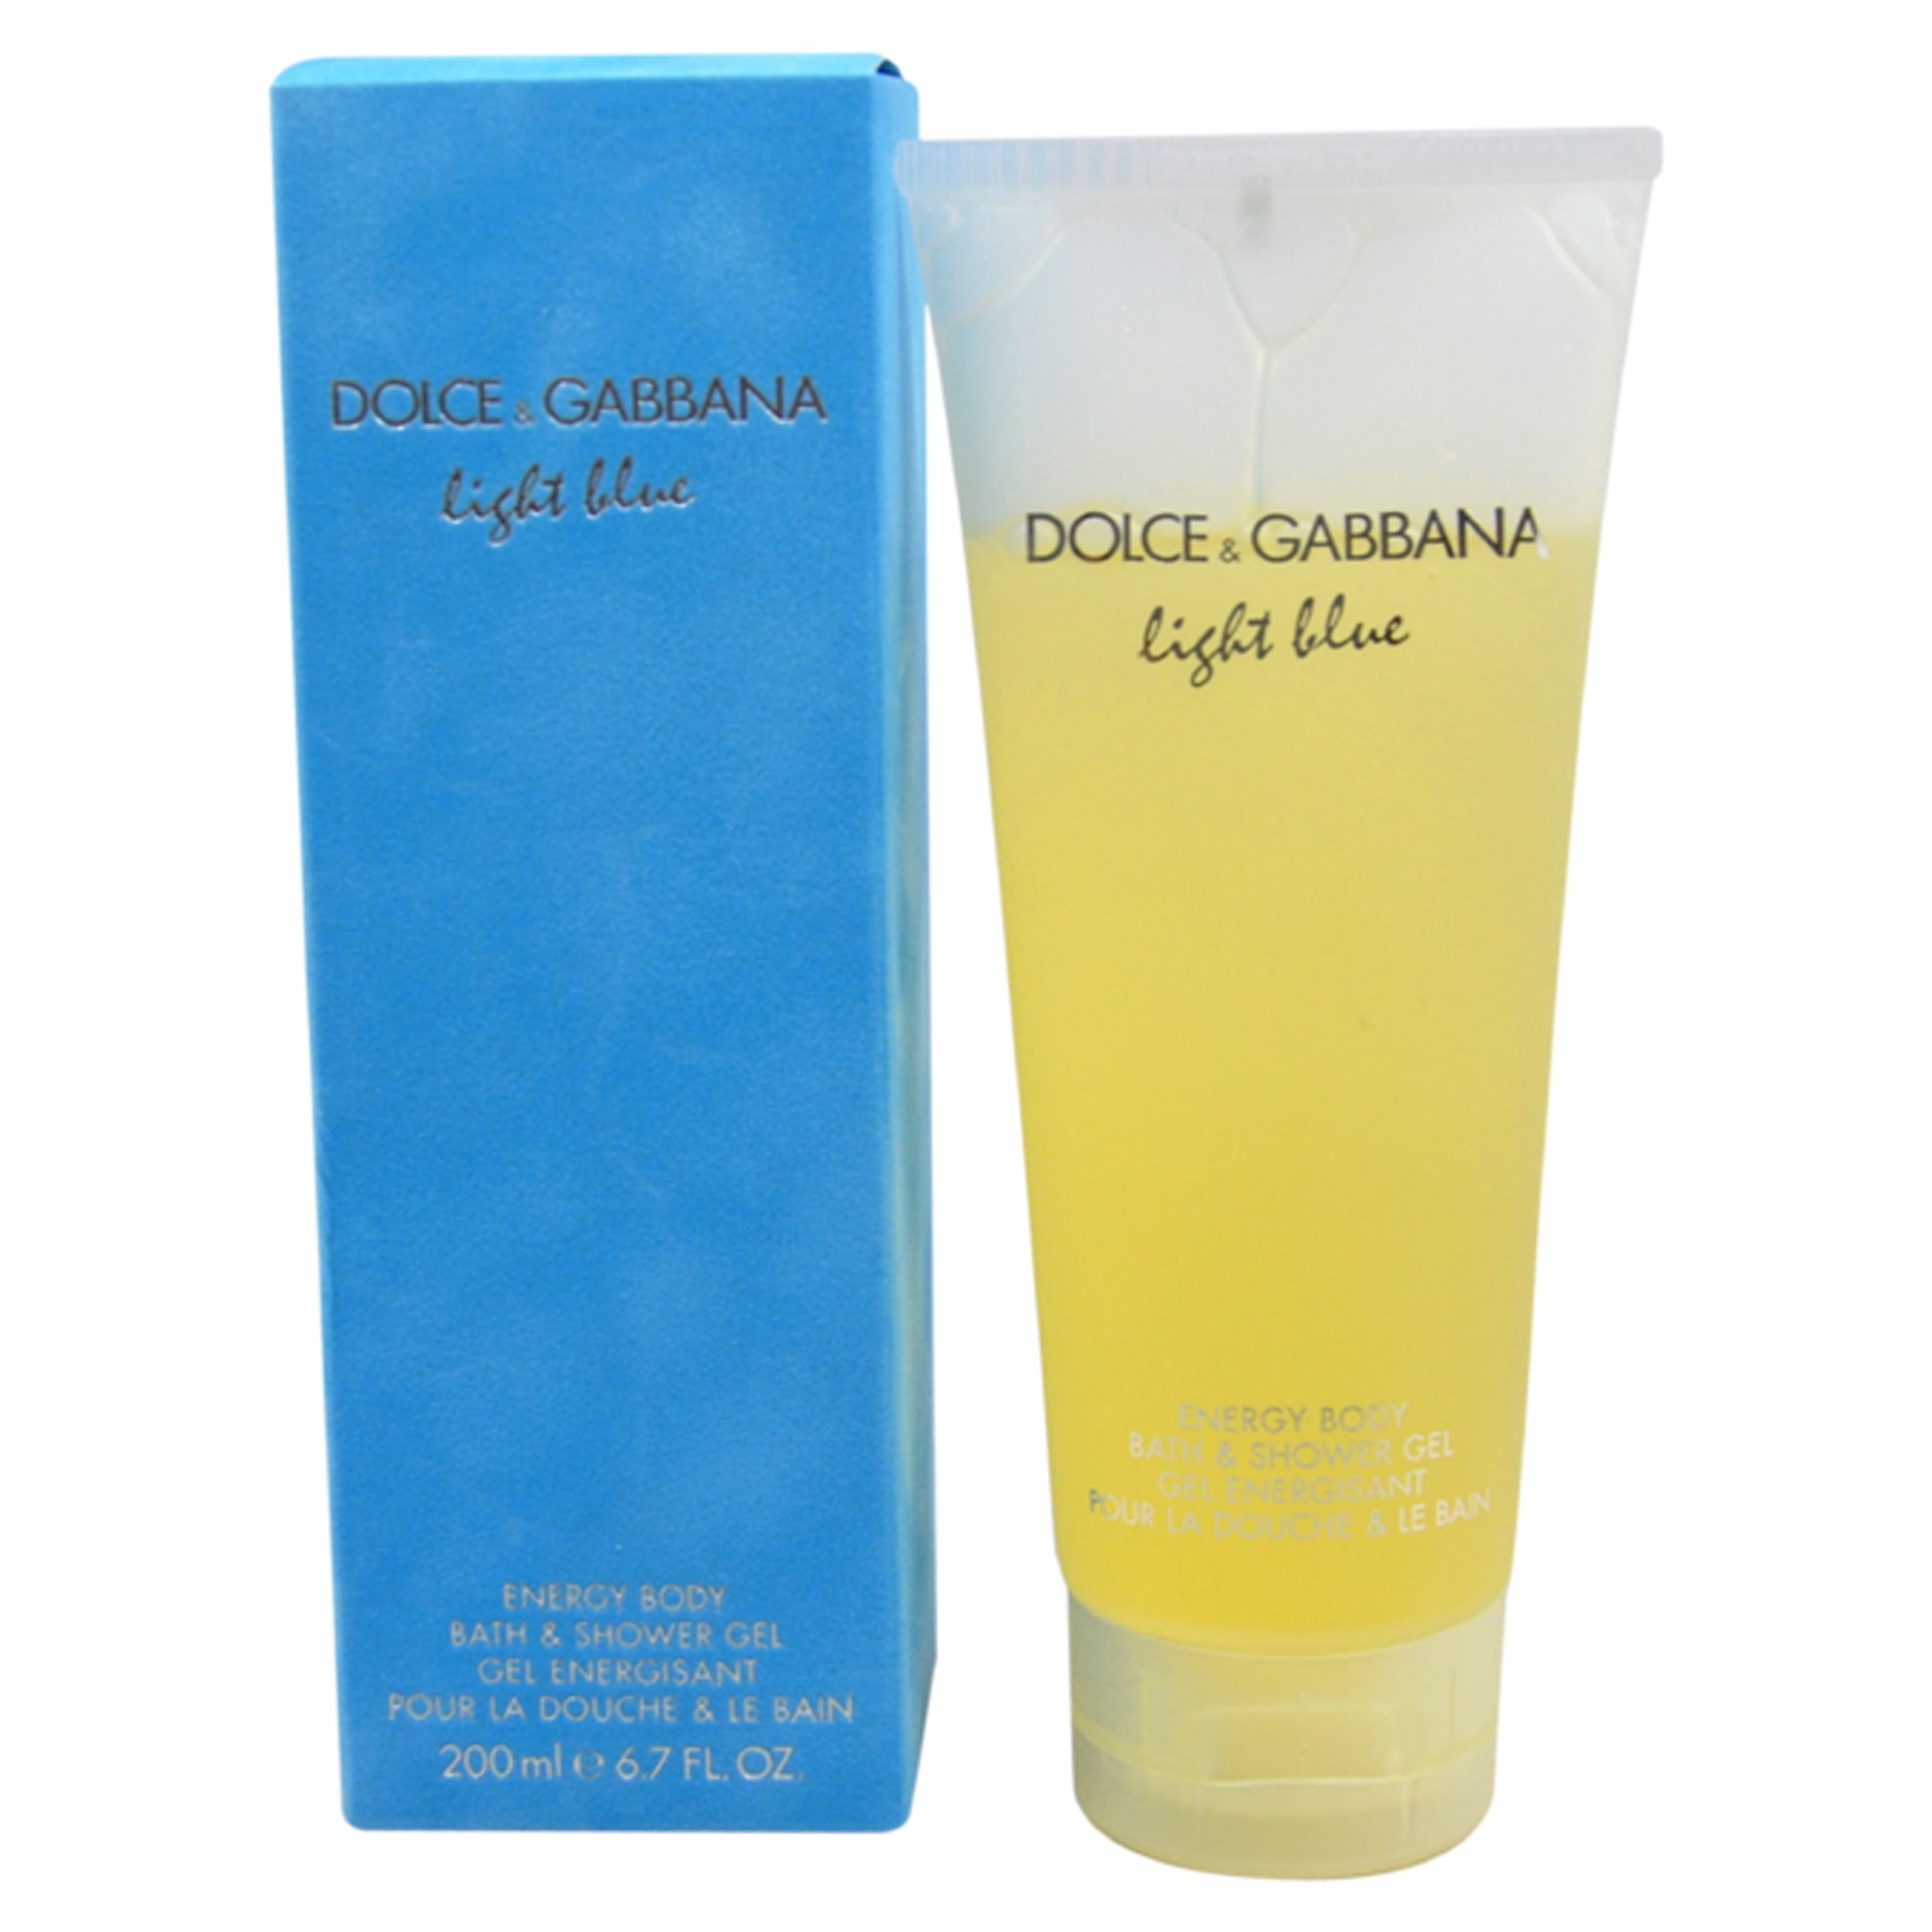 d&g light blue shower gel